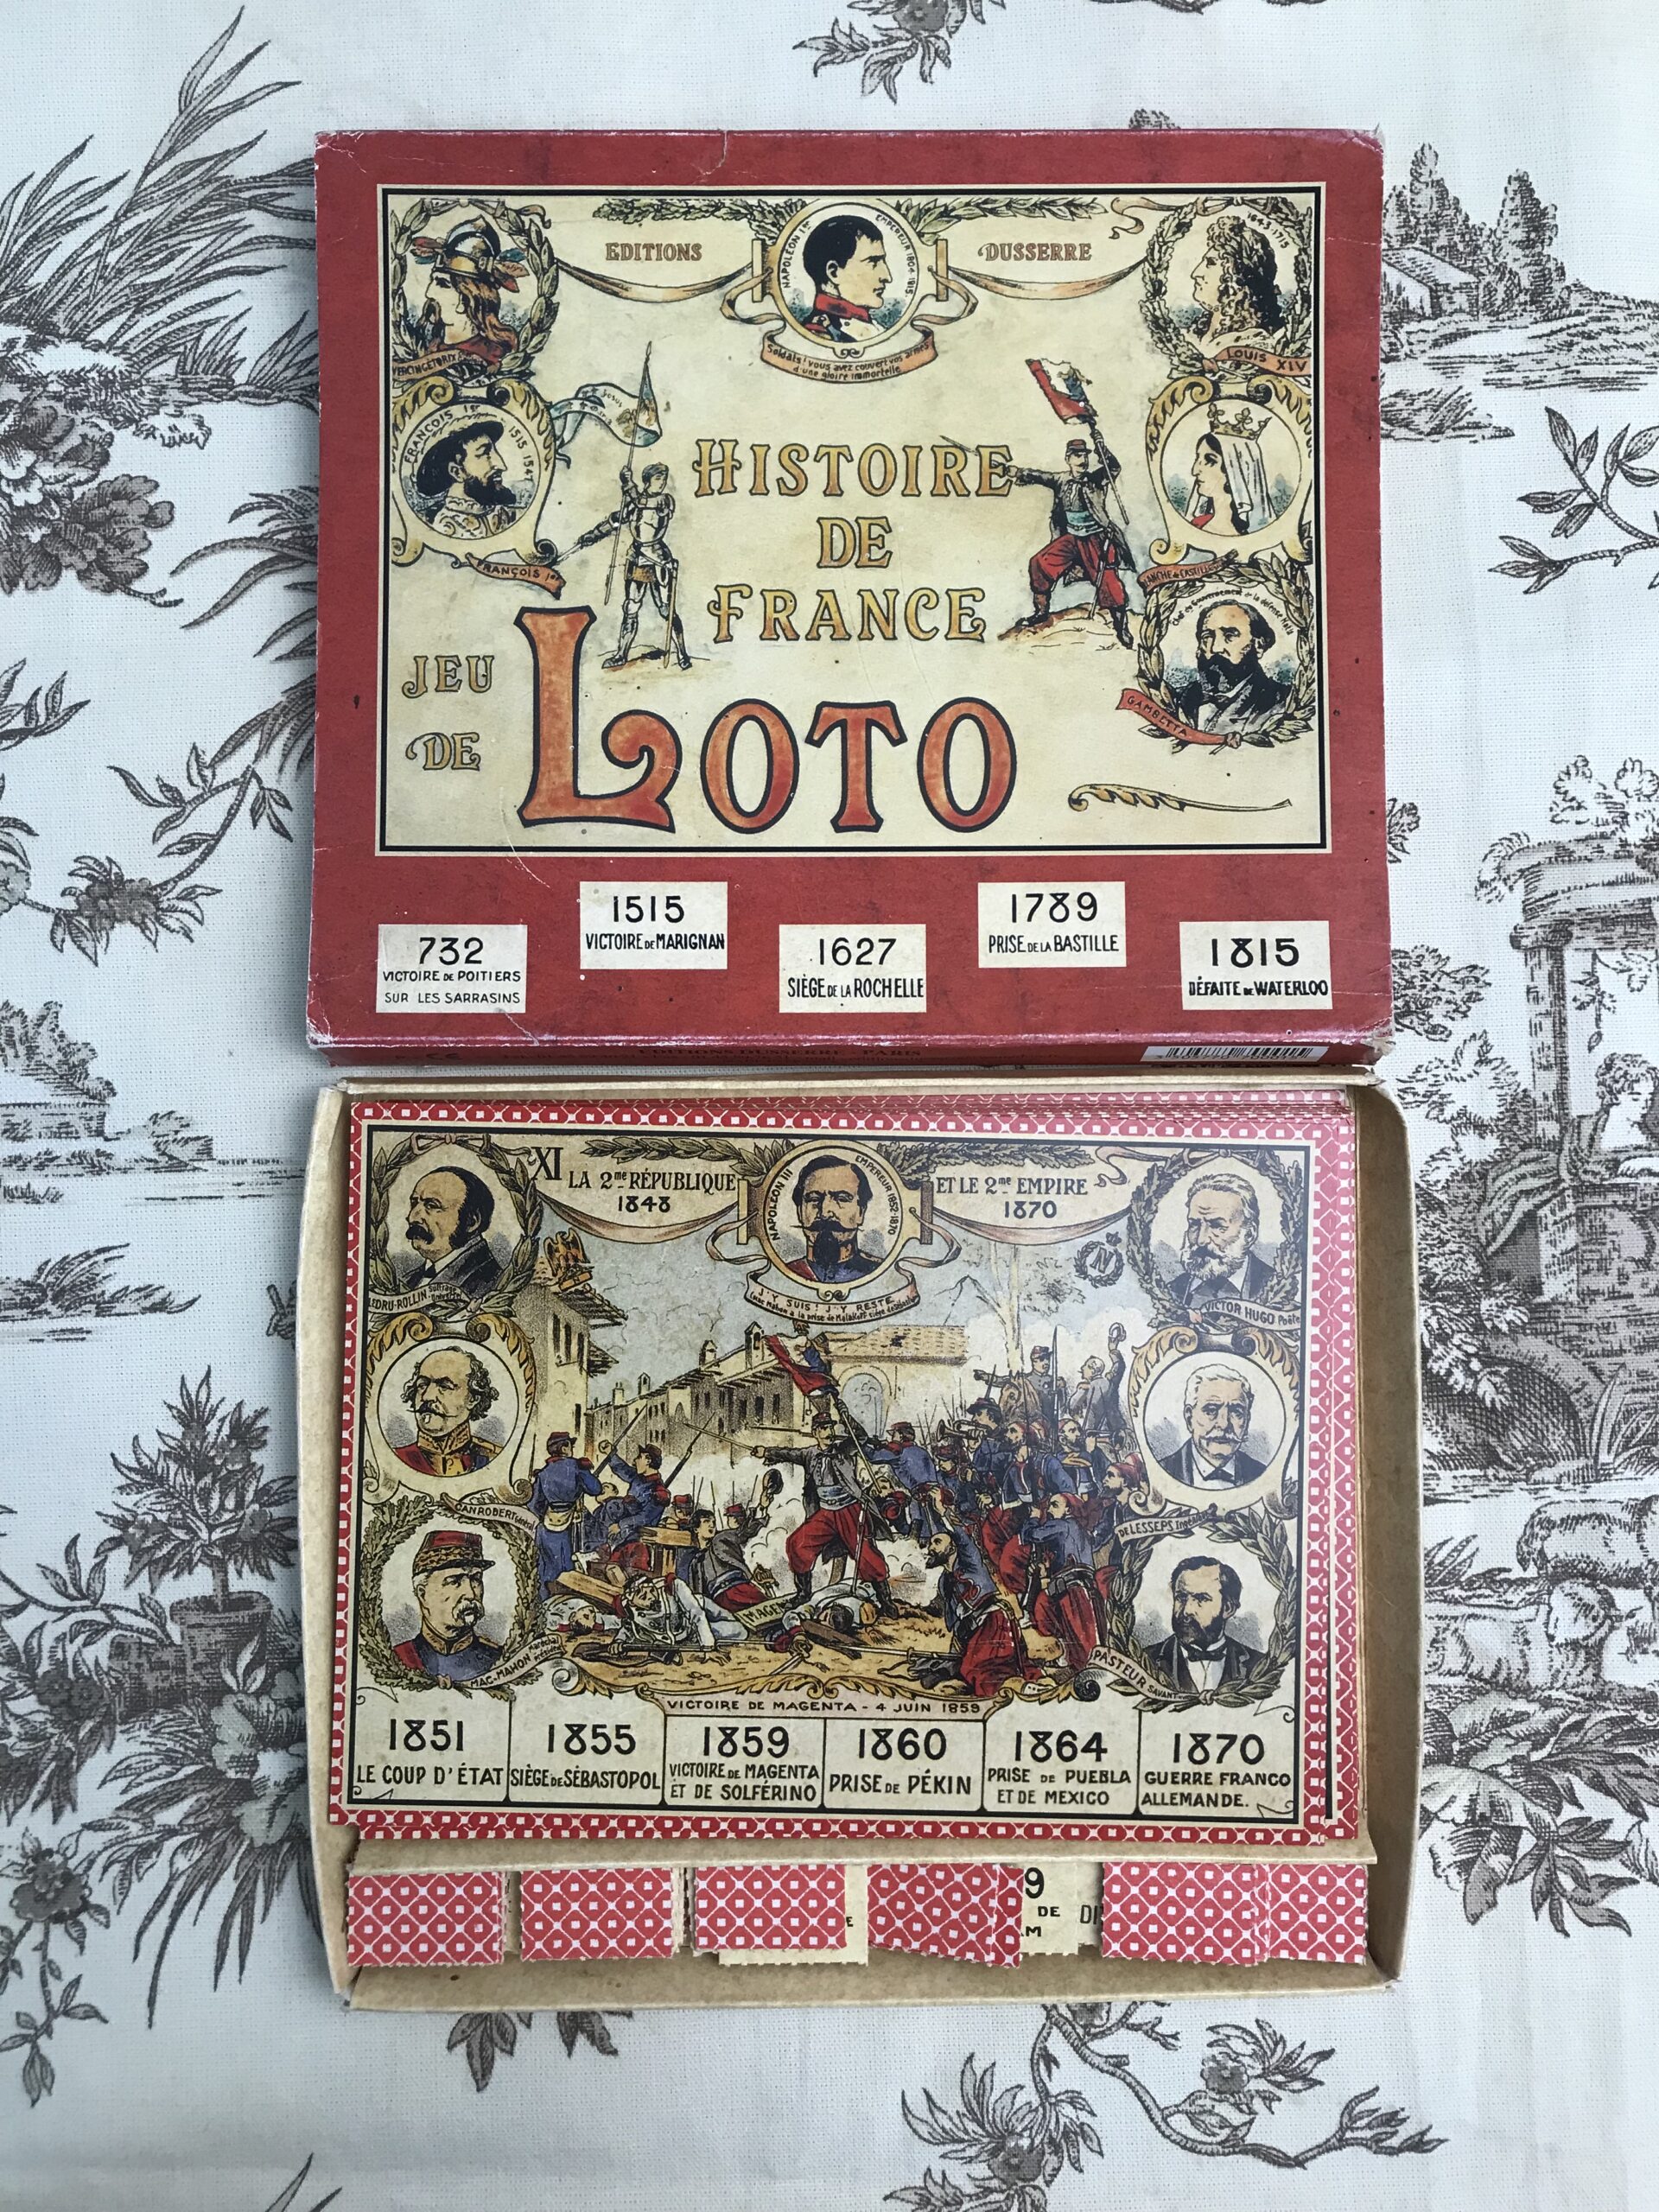 Jeu loto histoire de France 12 grandes périodes avec les dates